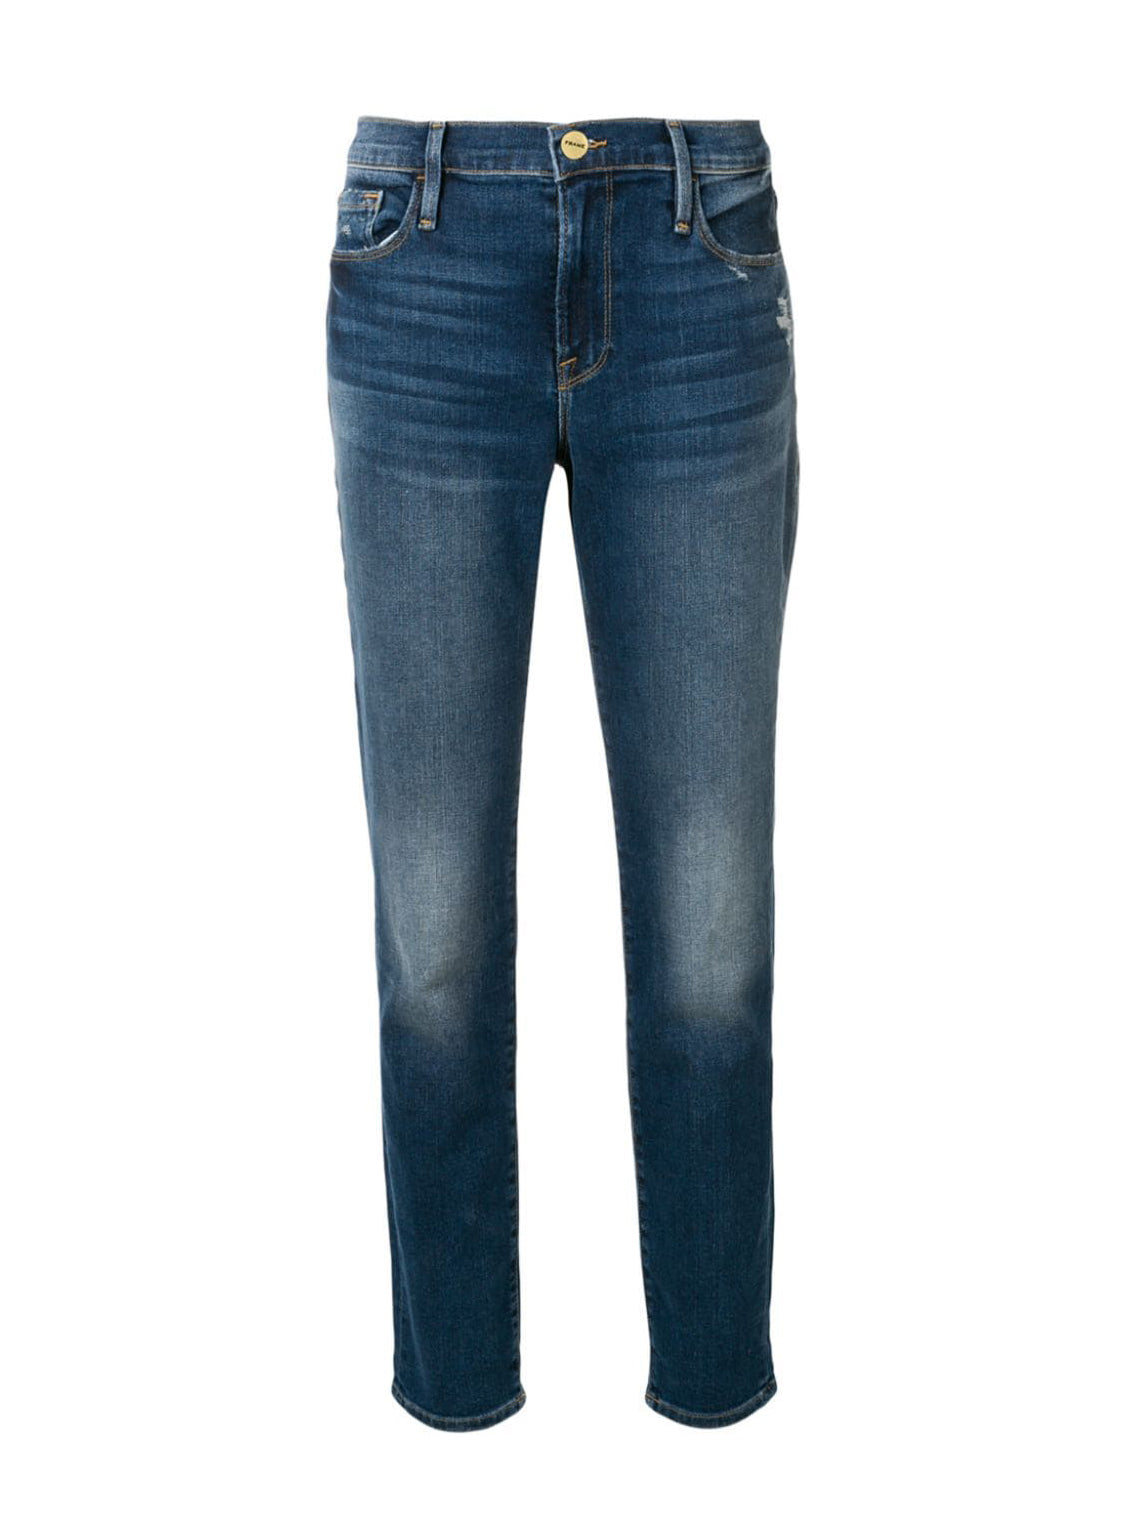 Le Garcon jeans, azure wash